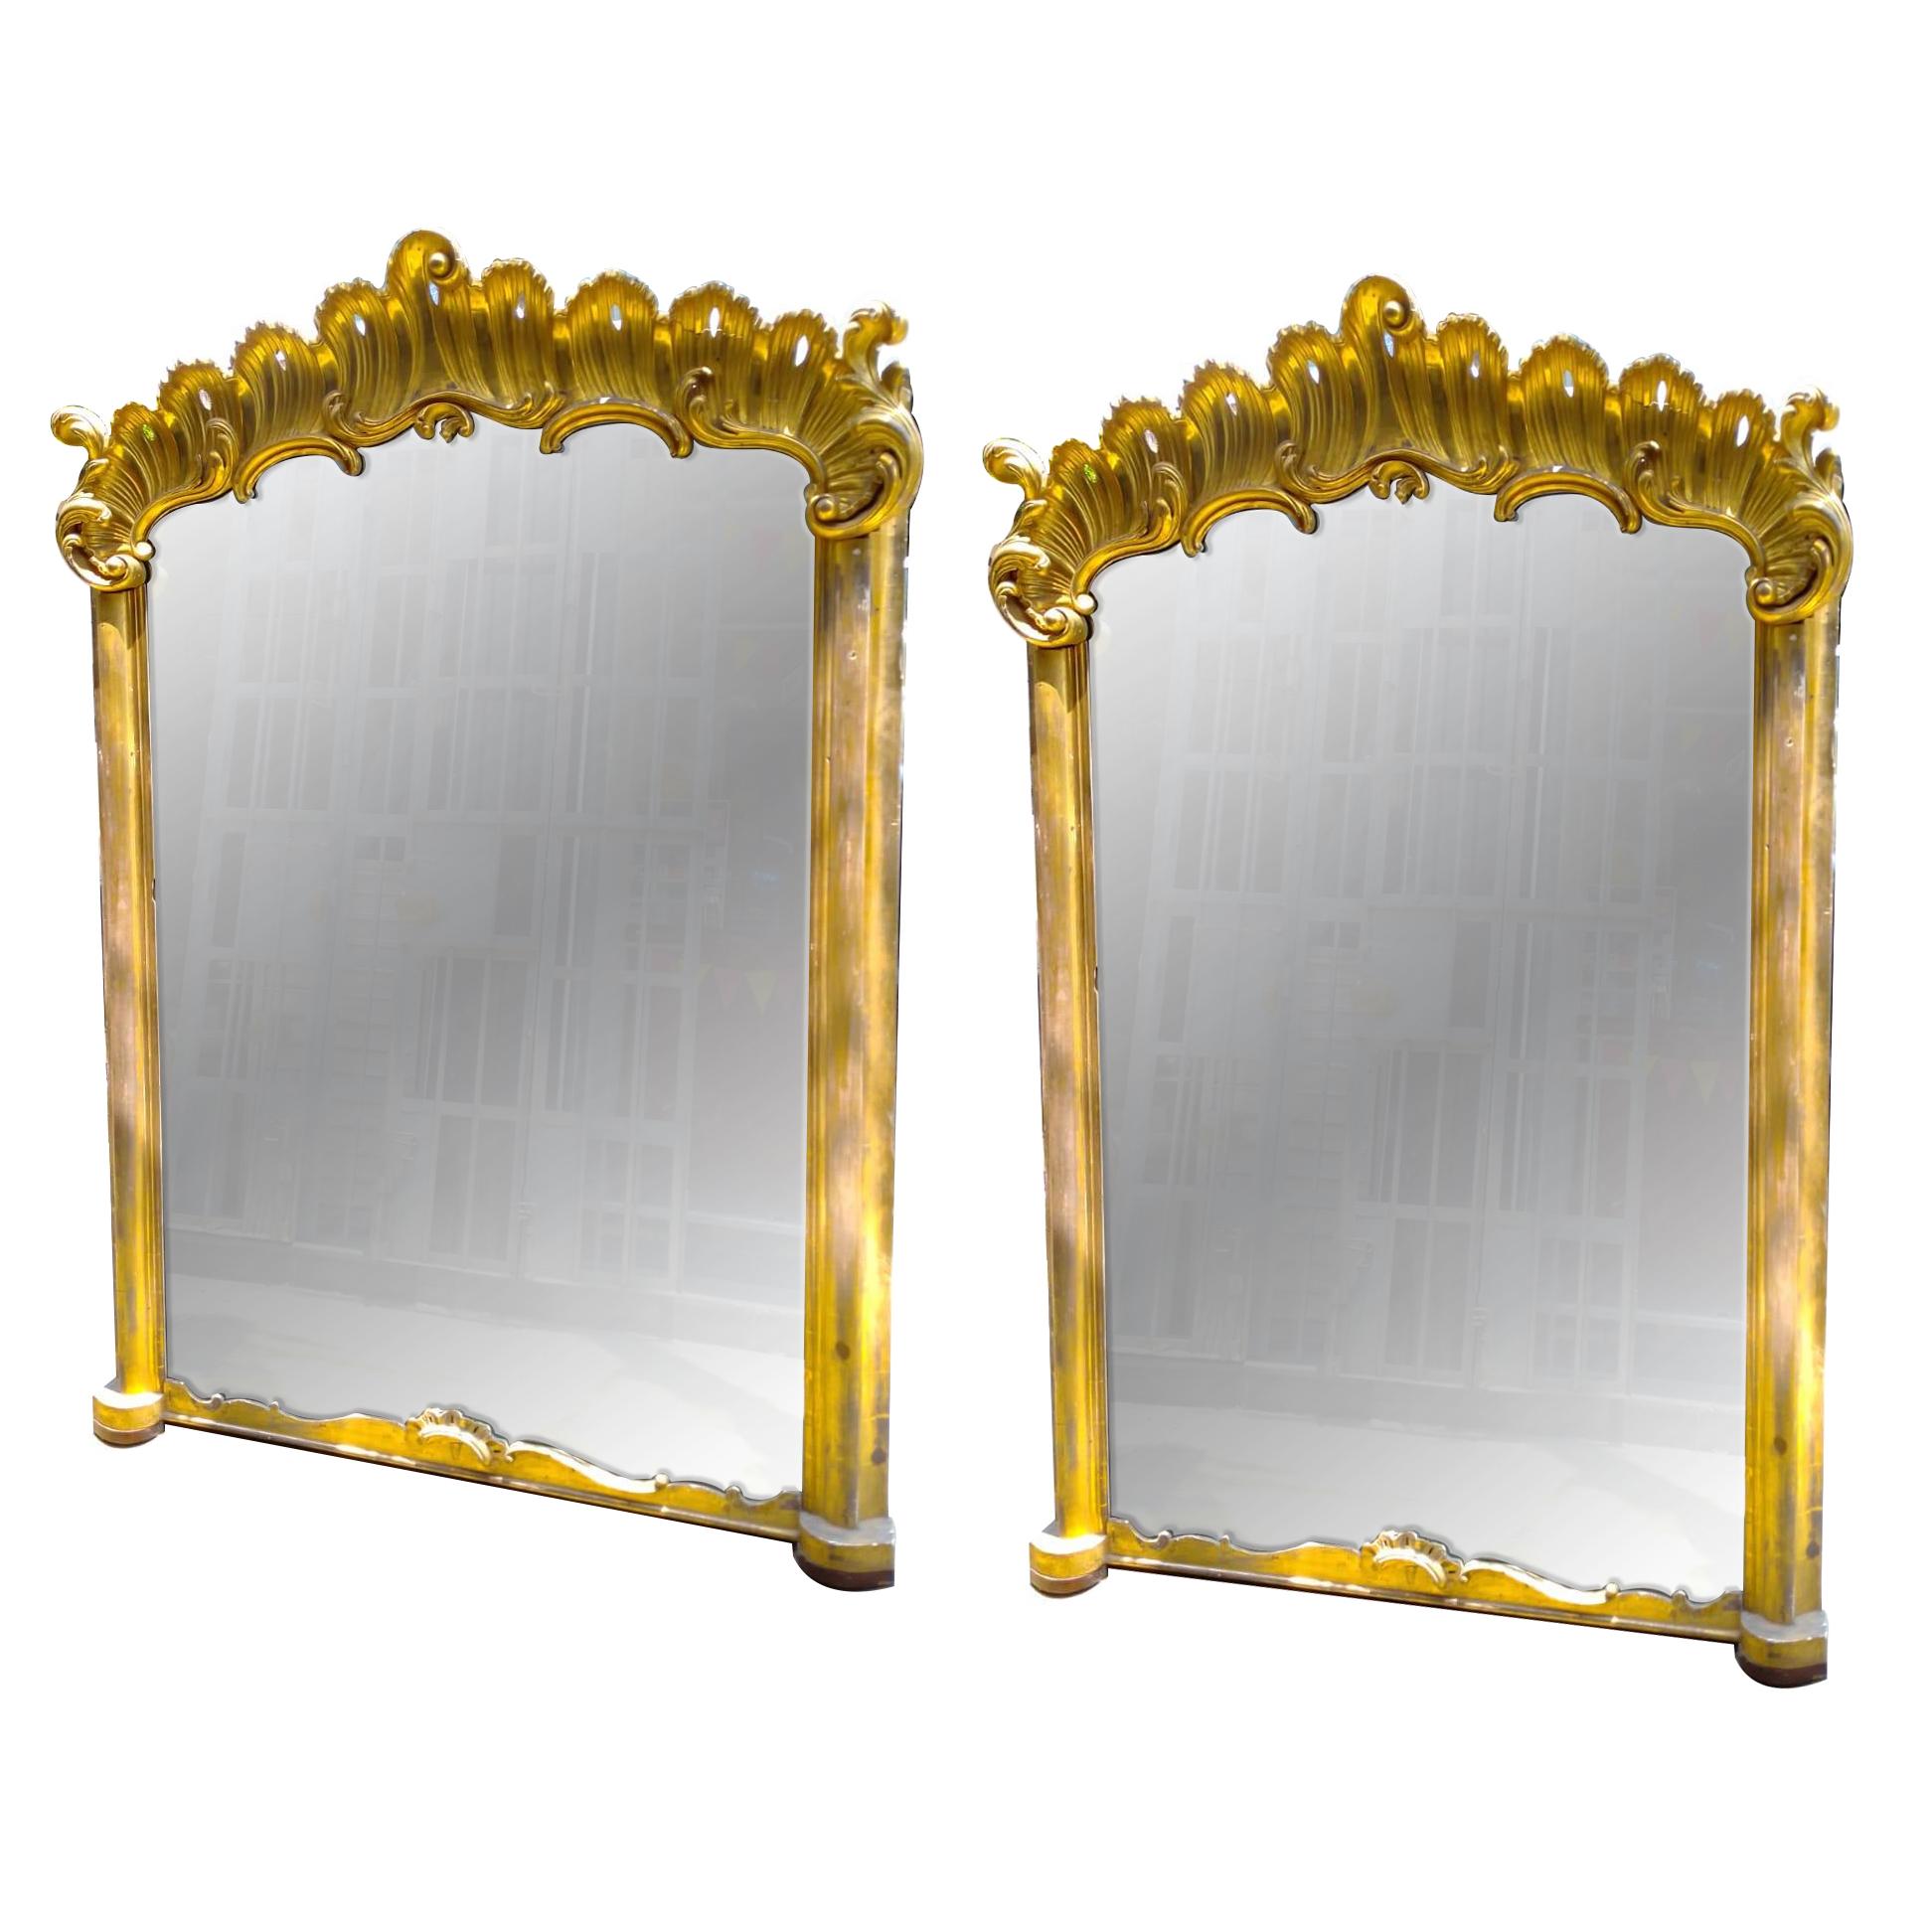 Paire de grands miroirs français en bois doré datant de 1900, avec finition dorée d'origine et dos en bois. Vendu par paire.

Mesures :
Hauteur 7 pieds 5